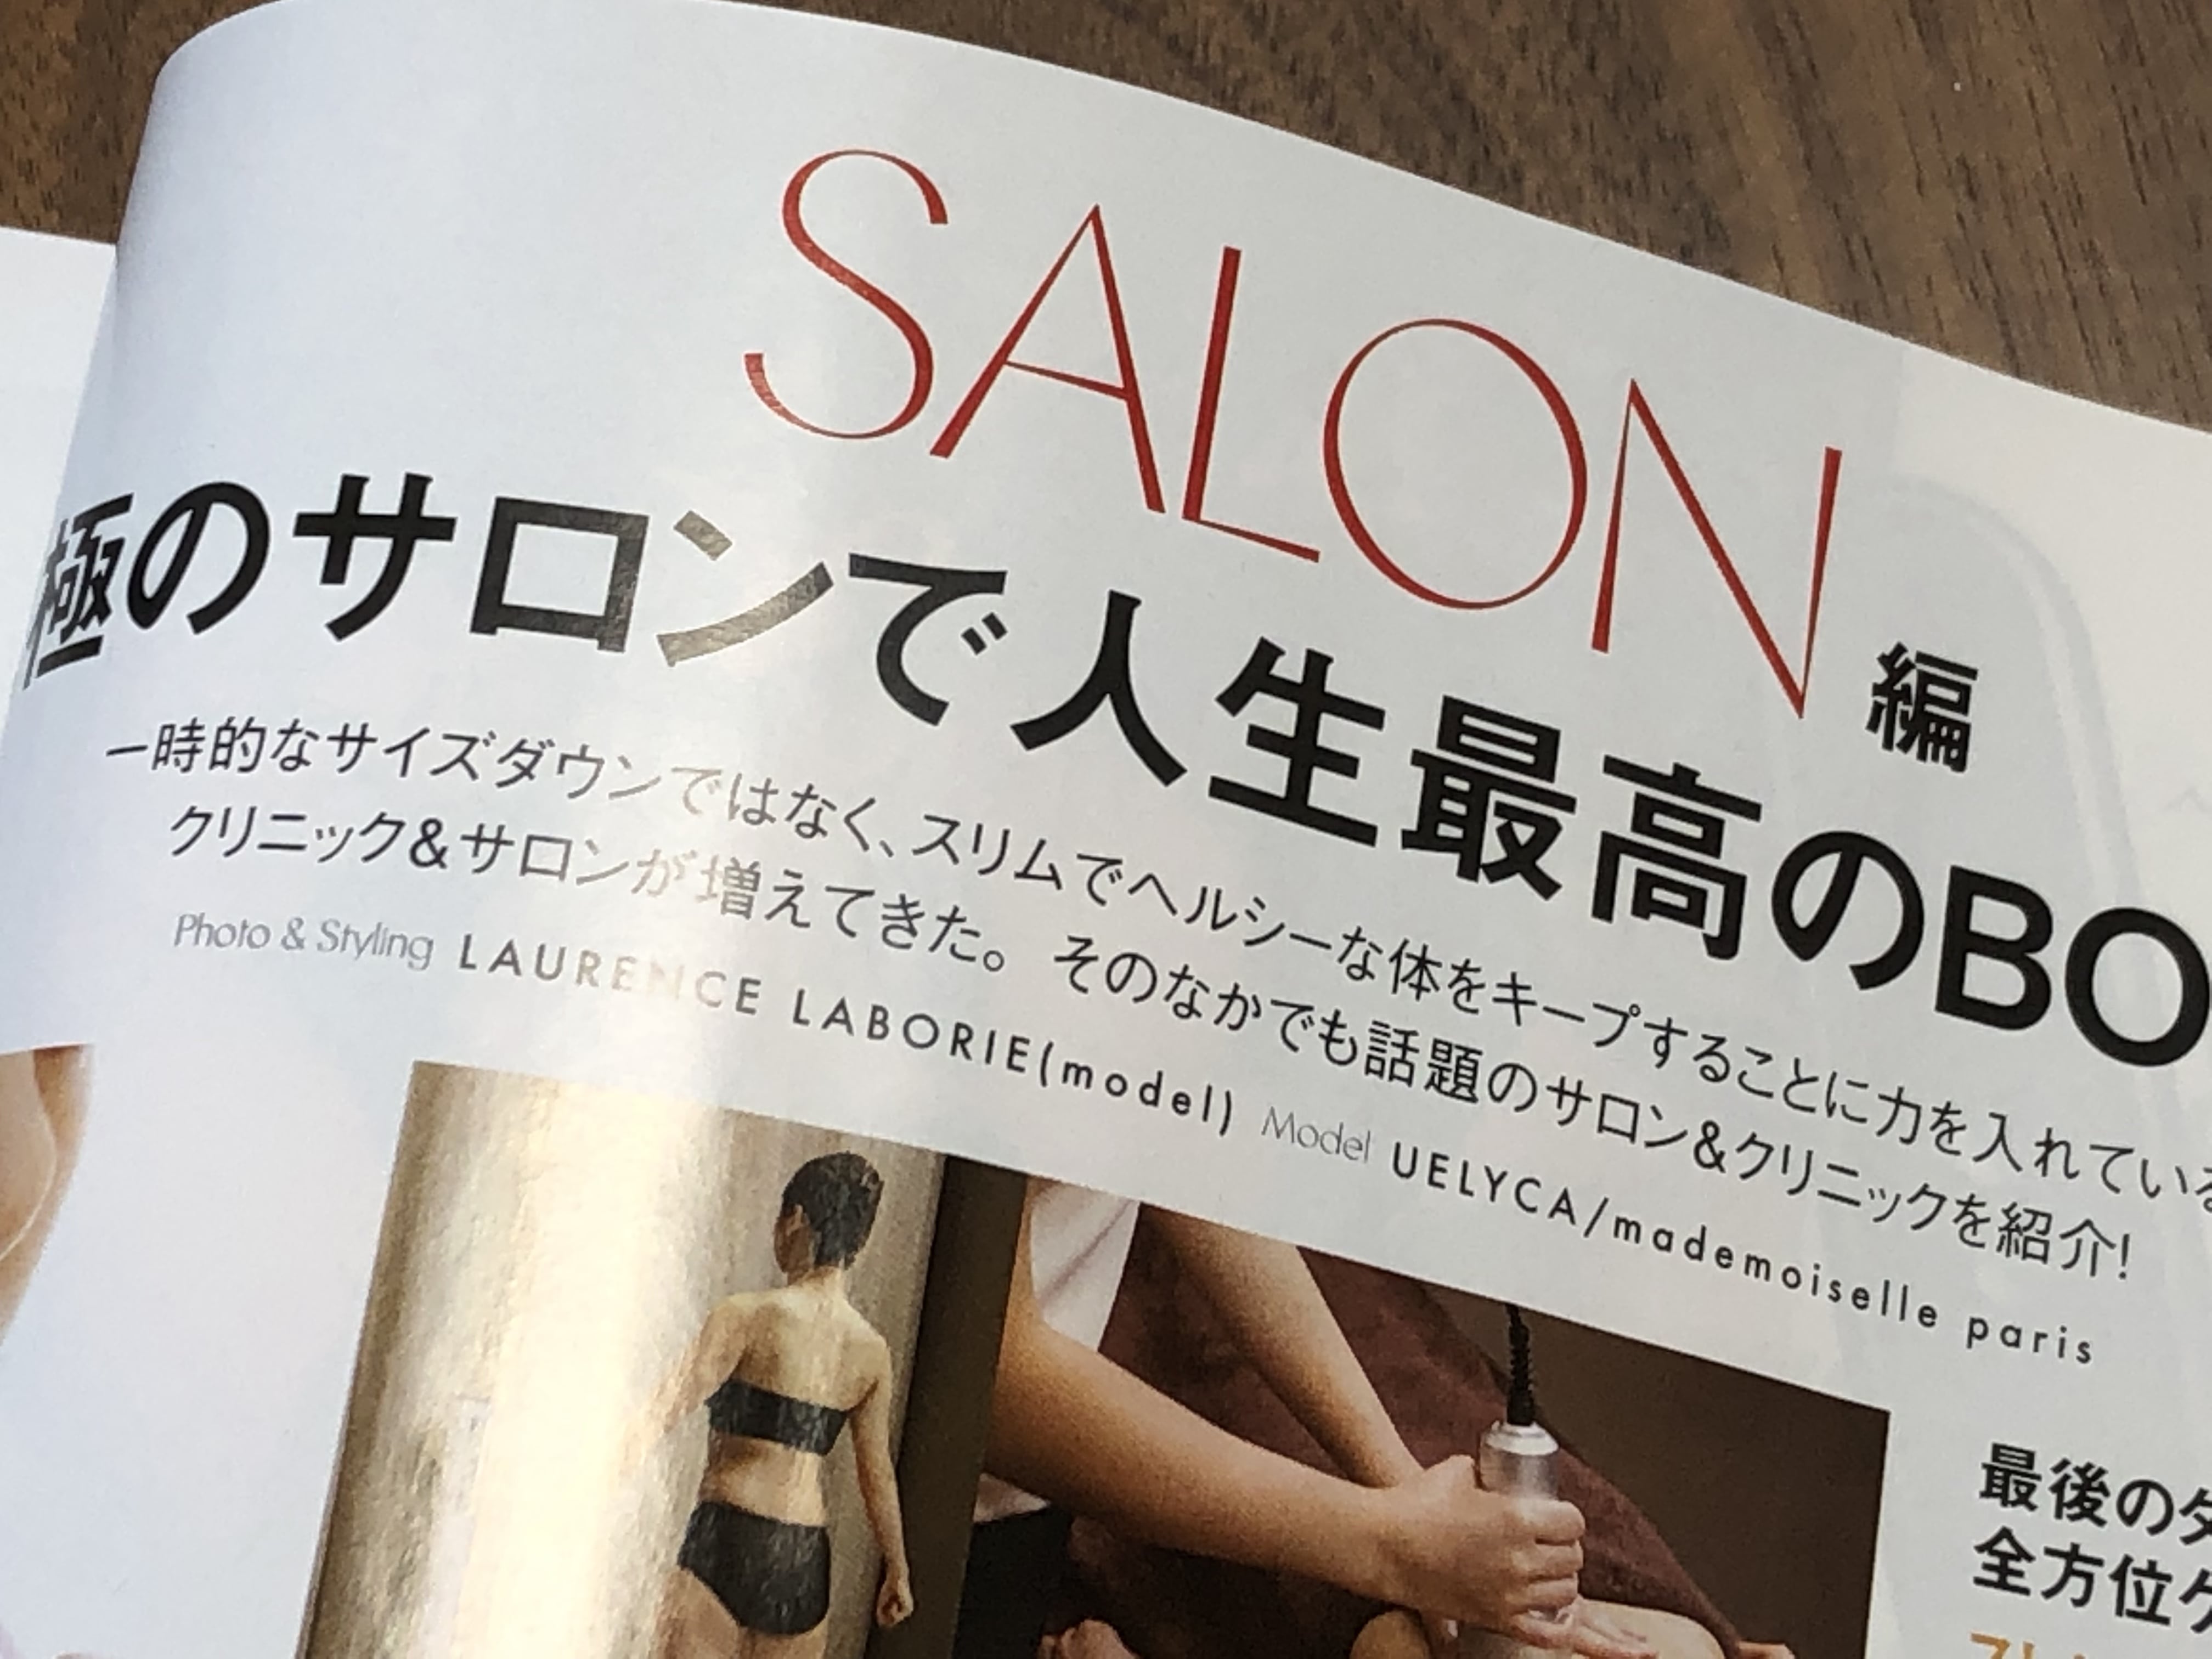 ELLE JAPON (エル・ジャポン) 2019 年 07 月号で「表参道セラサイズスタジオ」紹介されました！